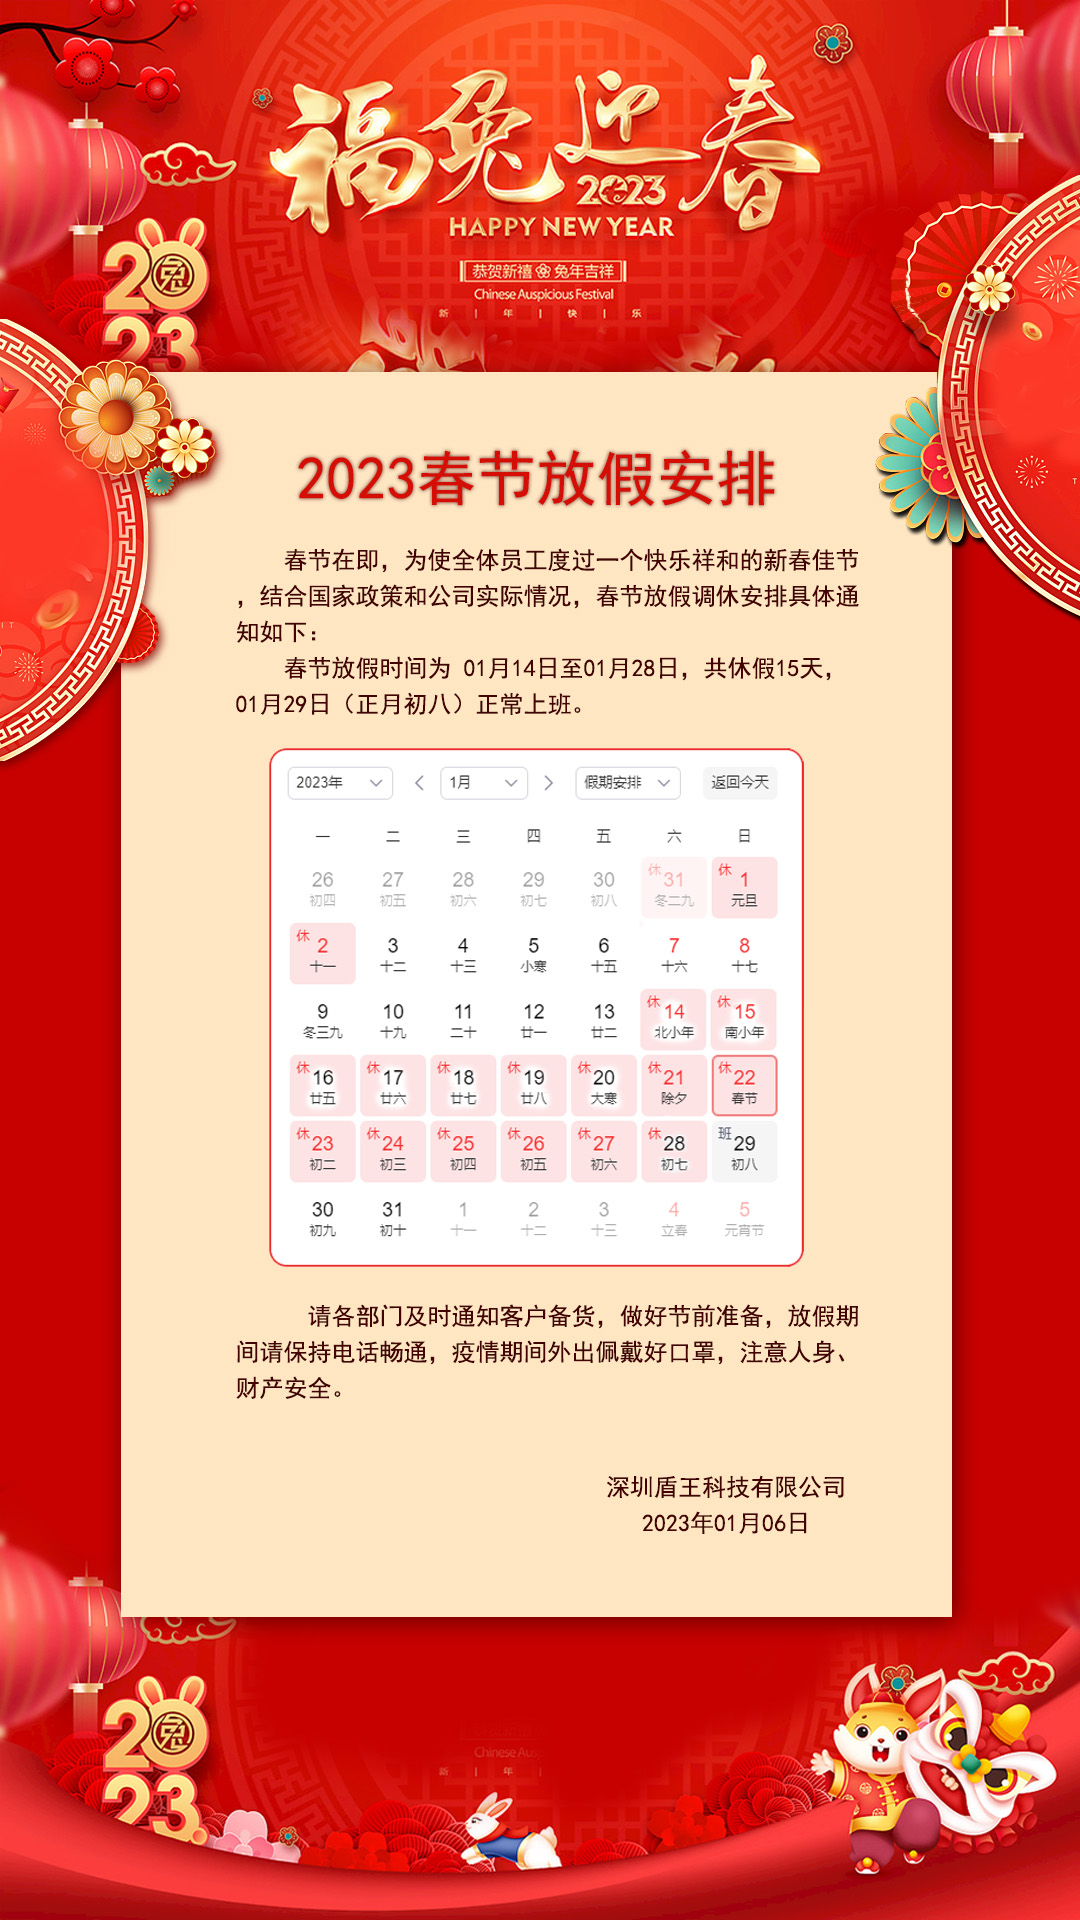 盾王科技2023春节放假安排